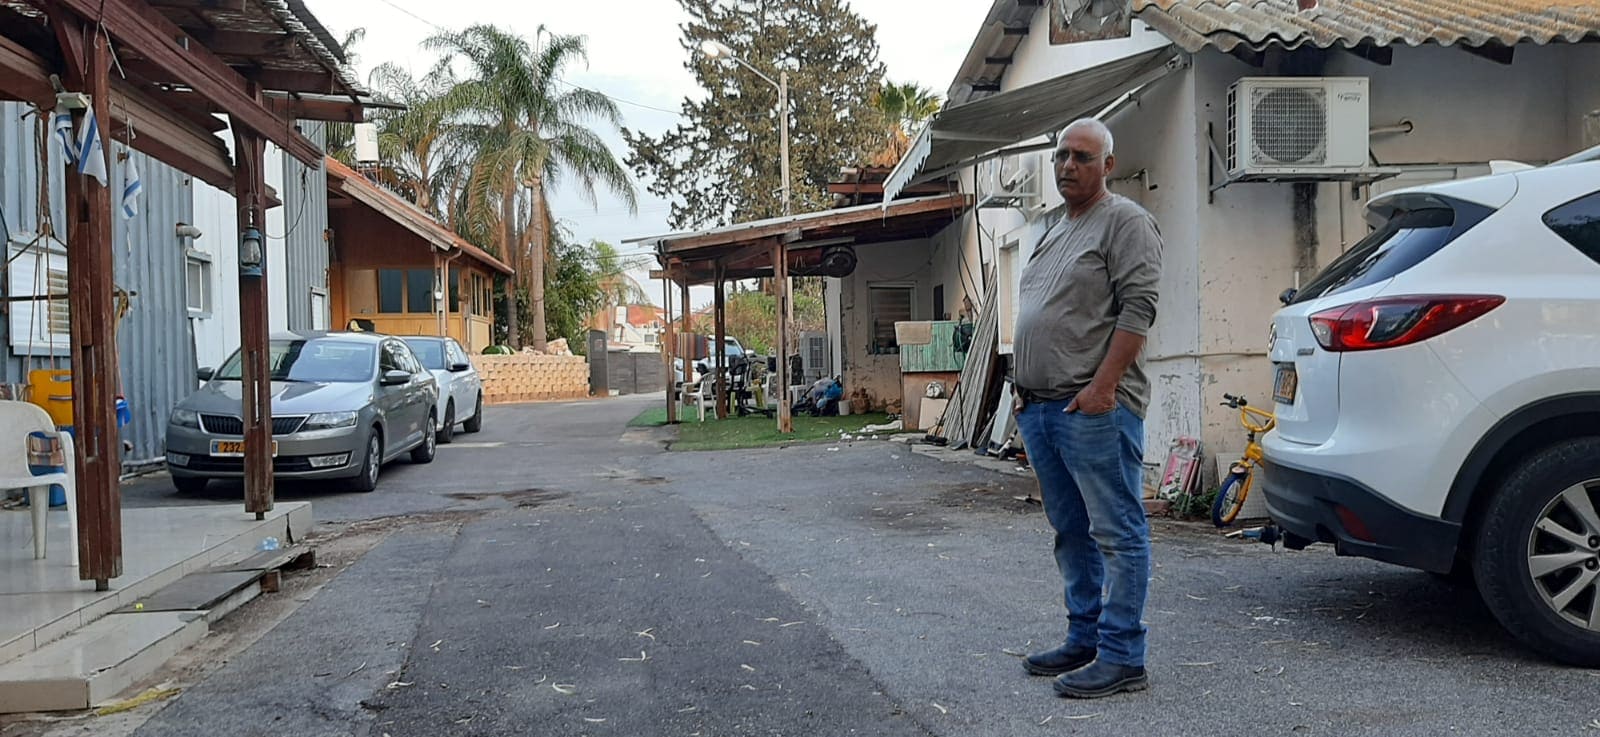 יואל רדעי בחצר המתחם המשפחתי. האבא רכש את השטח בשנת 57, וכעת העירייה טוענת שעליו להתפנות